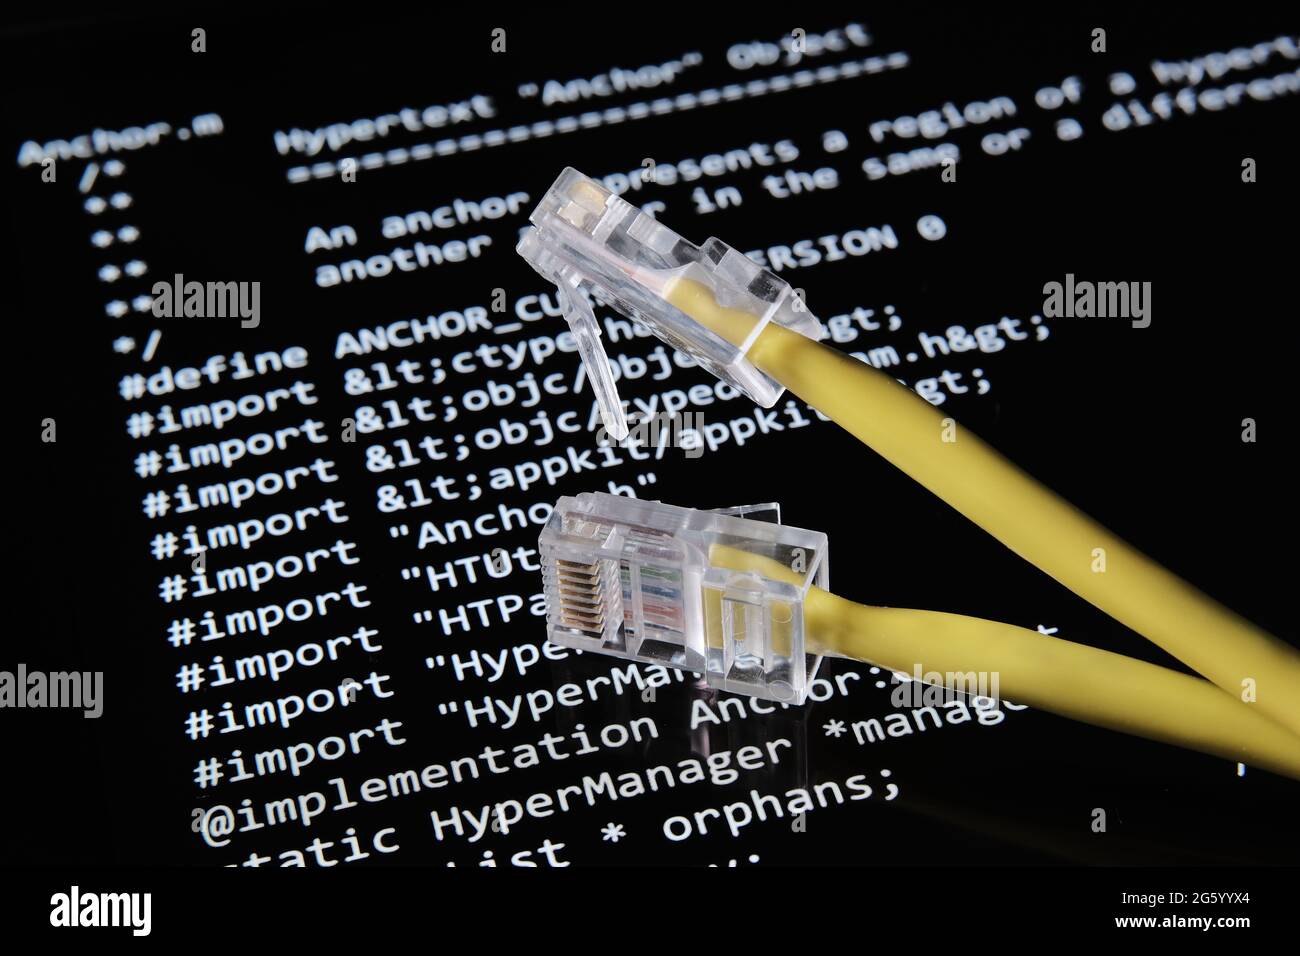 Internet-Kabel und World Wide Web-Quellcode, der als NFT von Tim Berners Lee auf dem unscharfen Hintergrund-Bildschirm verkauft wurde. Konzept. Stafford, Großbritannien, J Stockfoto